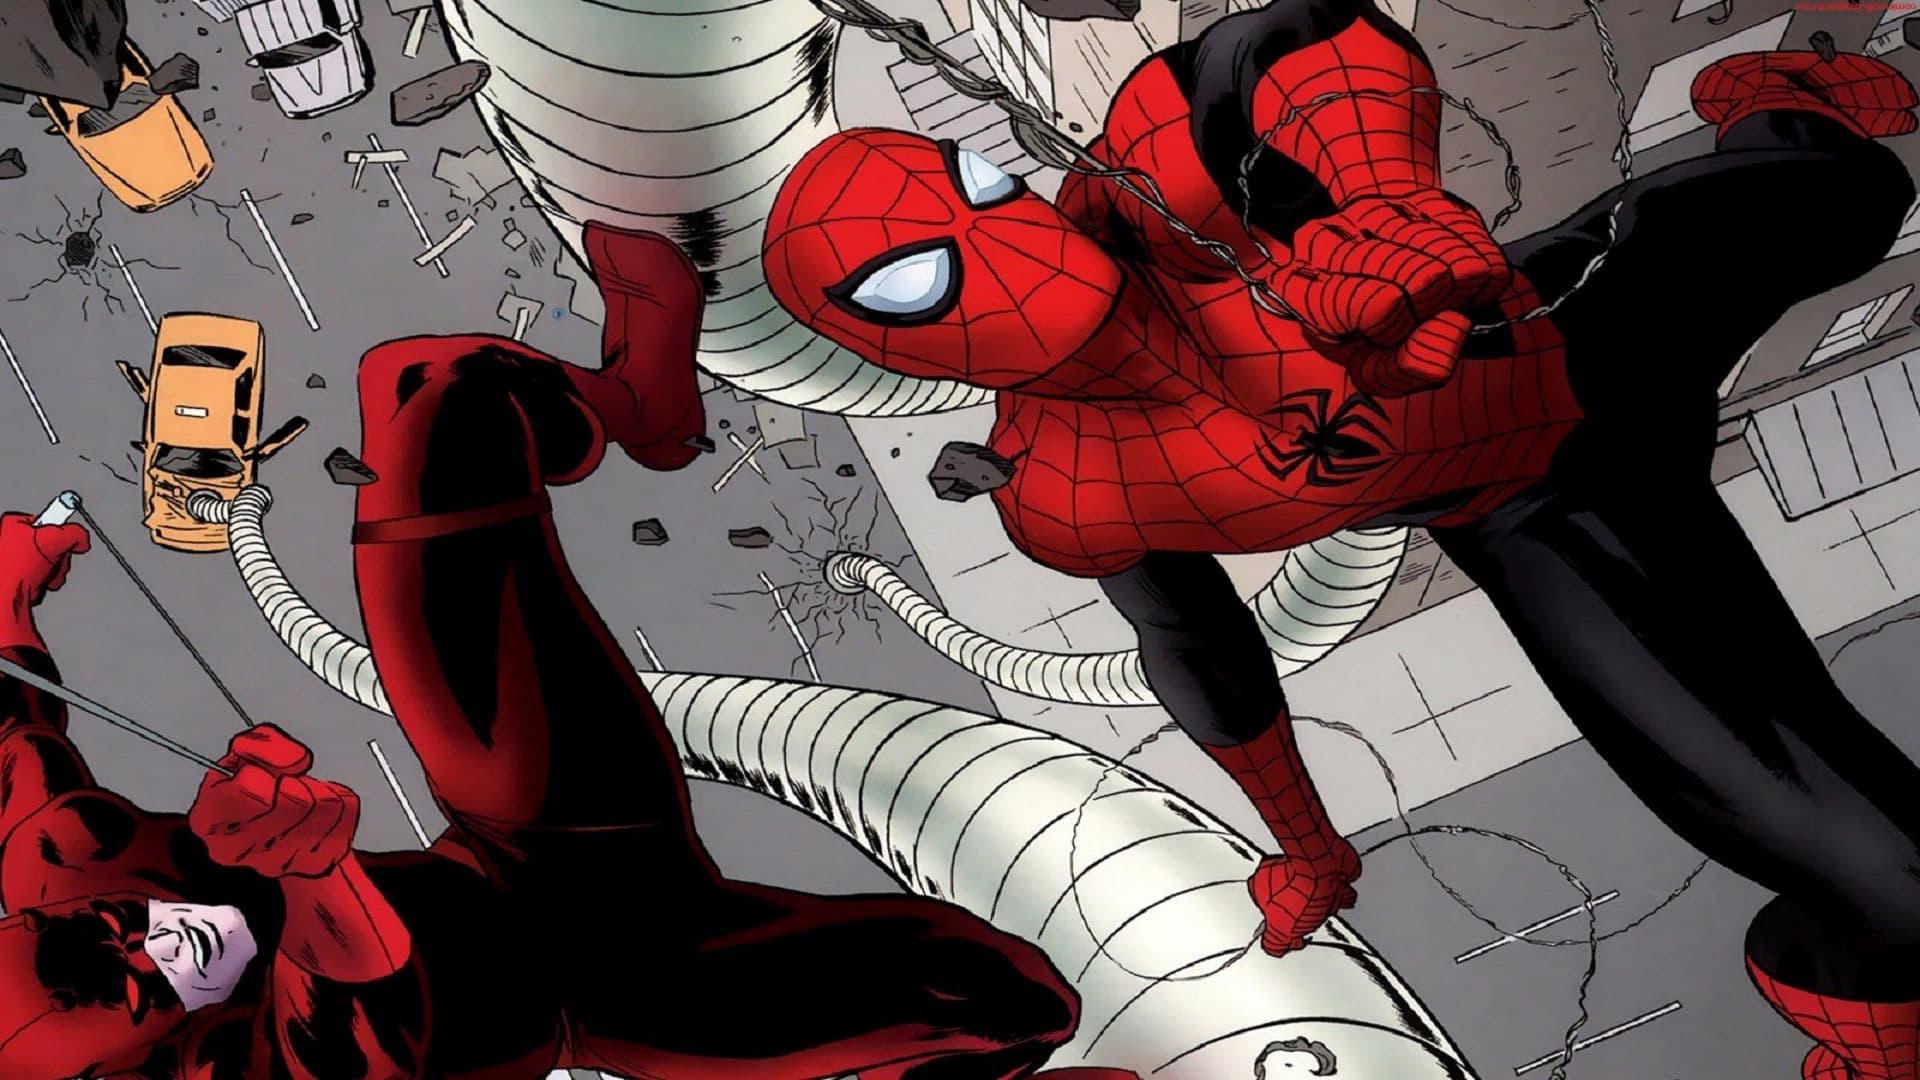 Daredevil vs. Spider-Man backdrop